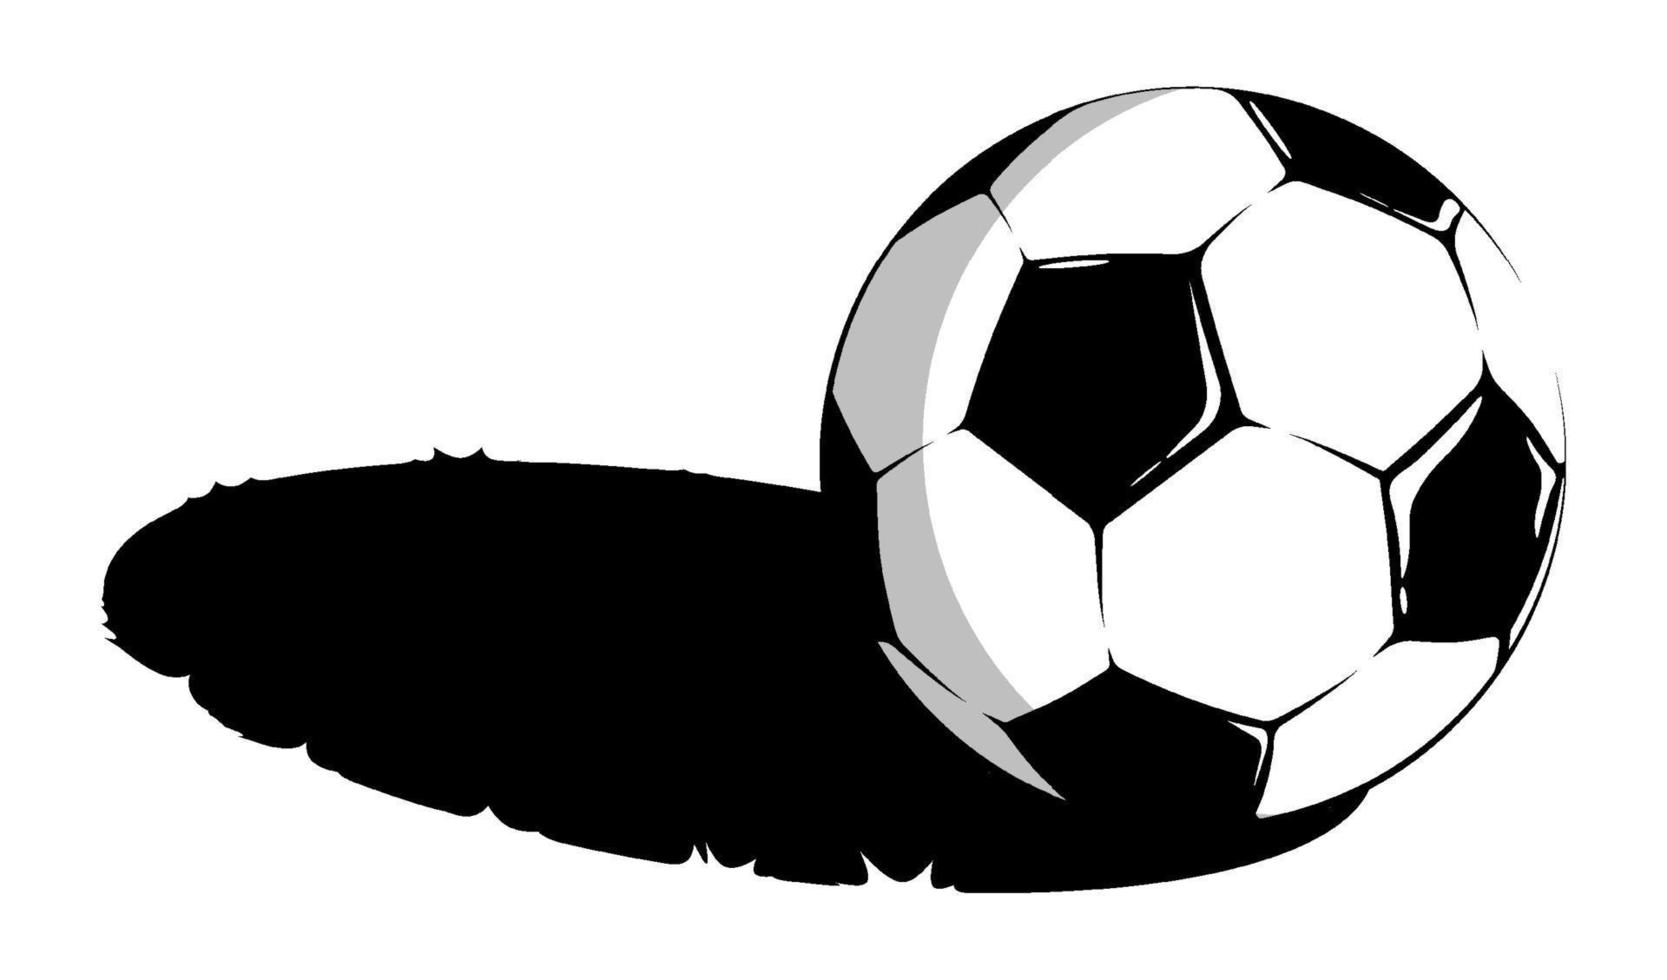 bola de futebol de esportes clássicos preto e branco para futebol encontra-se na grama. sombra no campo de esportes. vetor de contraste minimalista